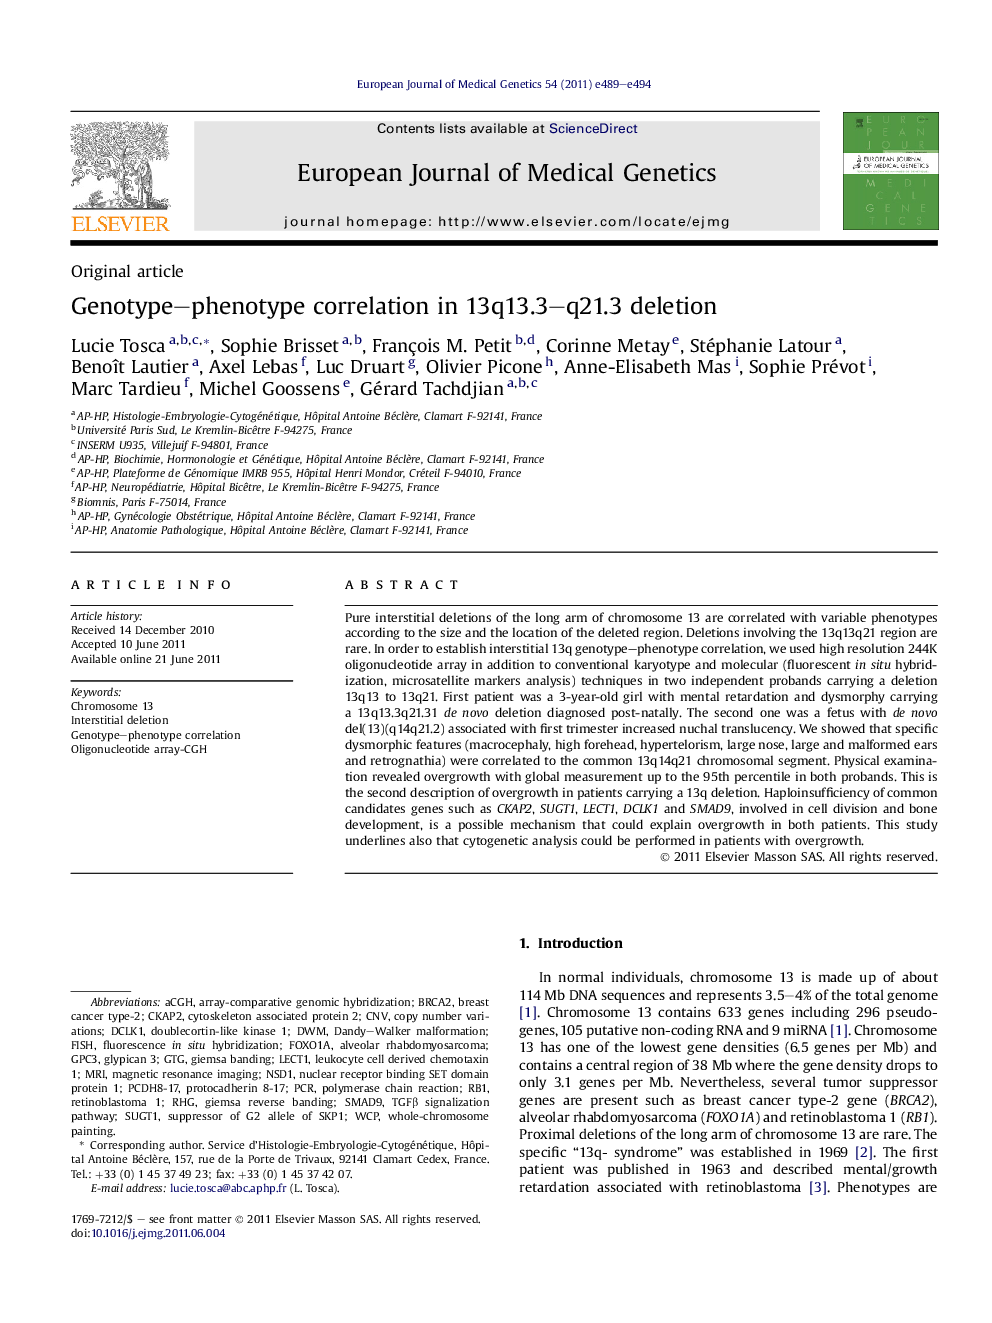 Genotype–phenotype correlation in 13q13.3–q21.3 deletion